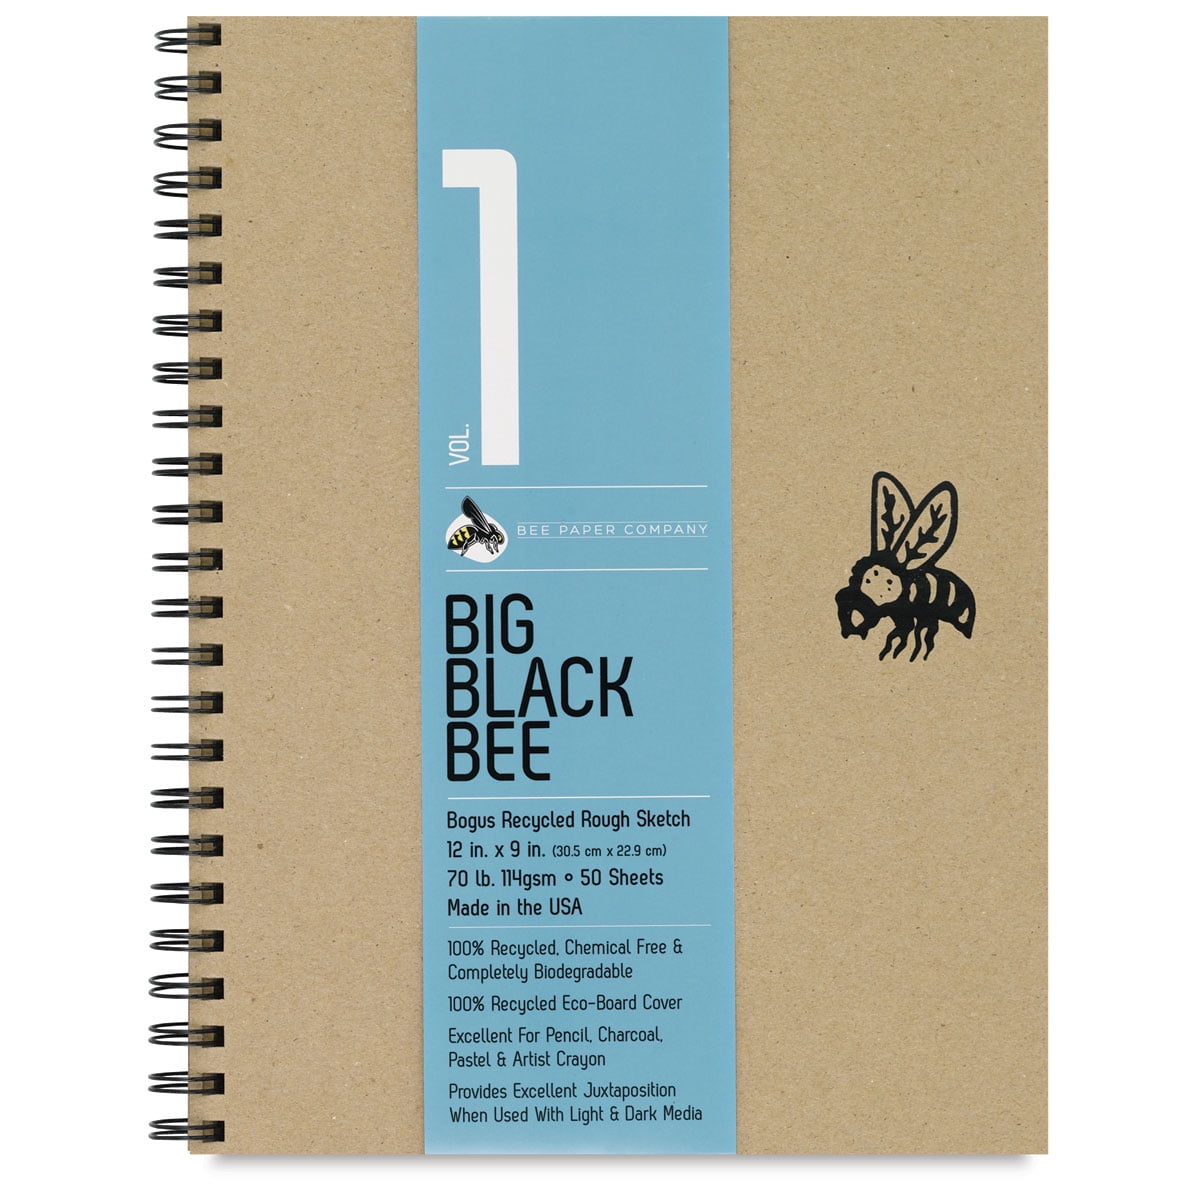 Bee Paper Co-Mo 86lb Sketch Paper Pad 8X10